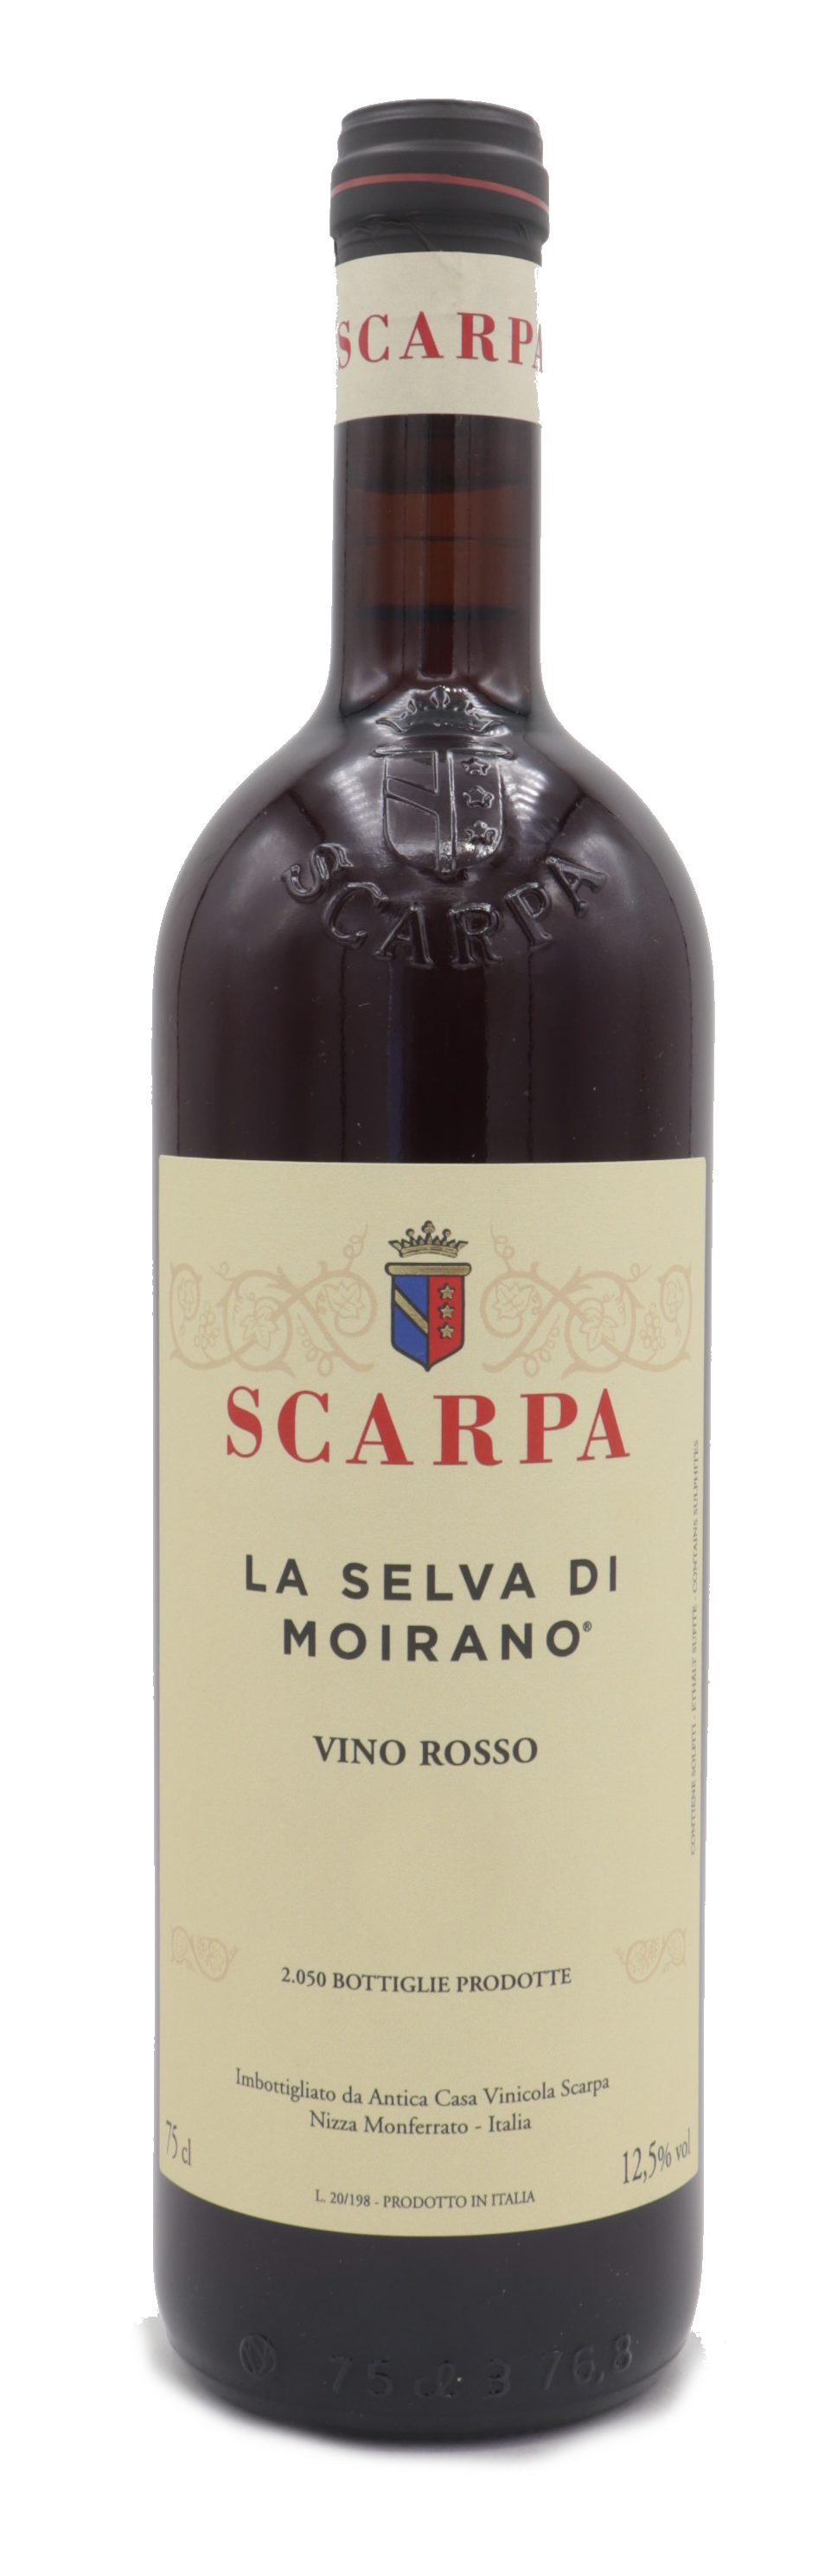 Scarpa Vino Rosso “Selva di Moirano” 2019